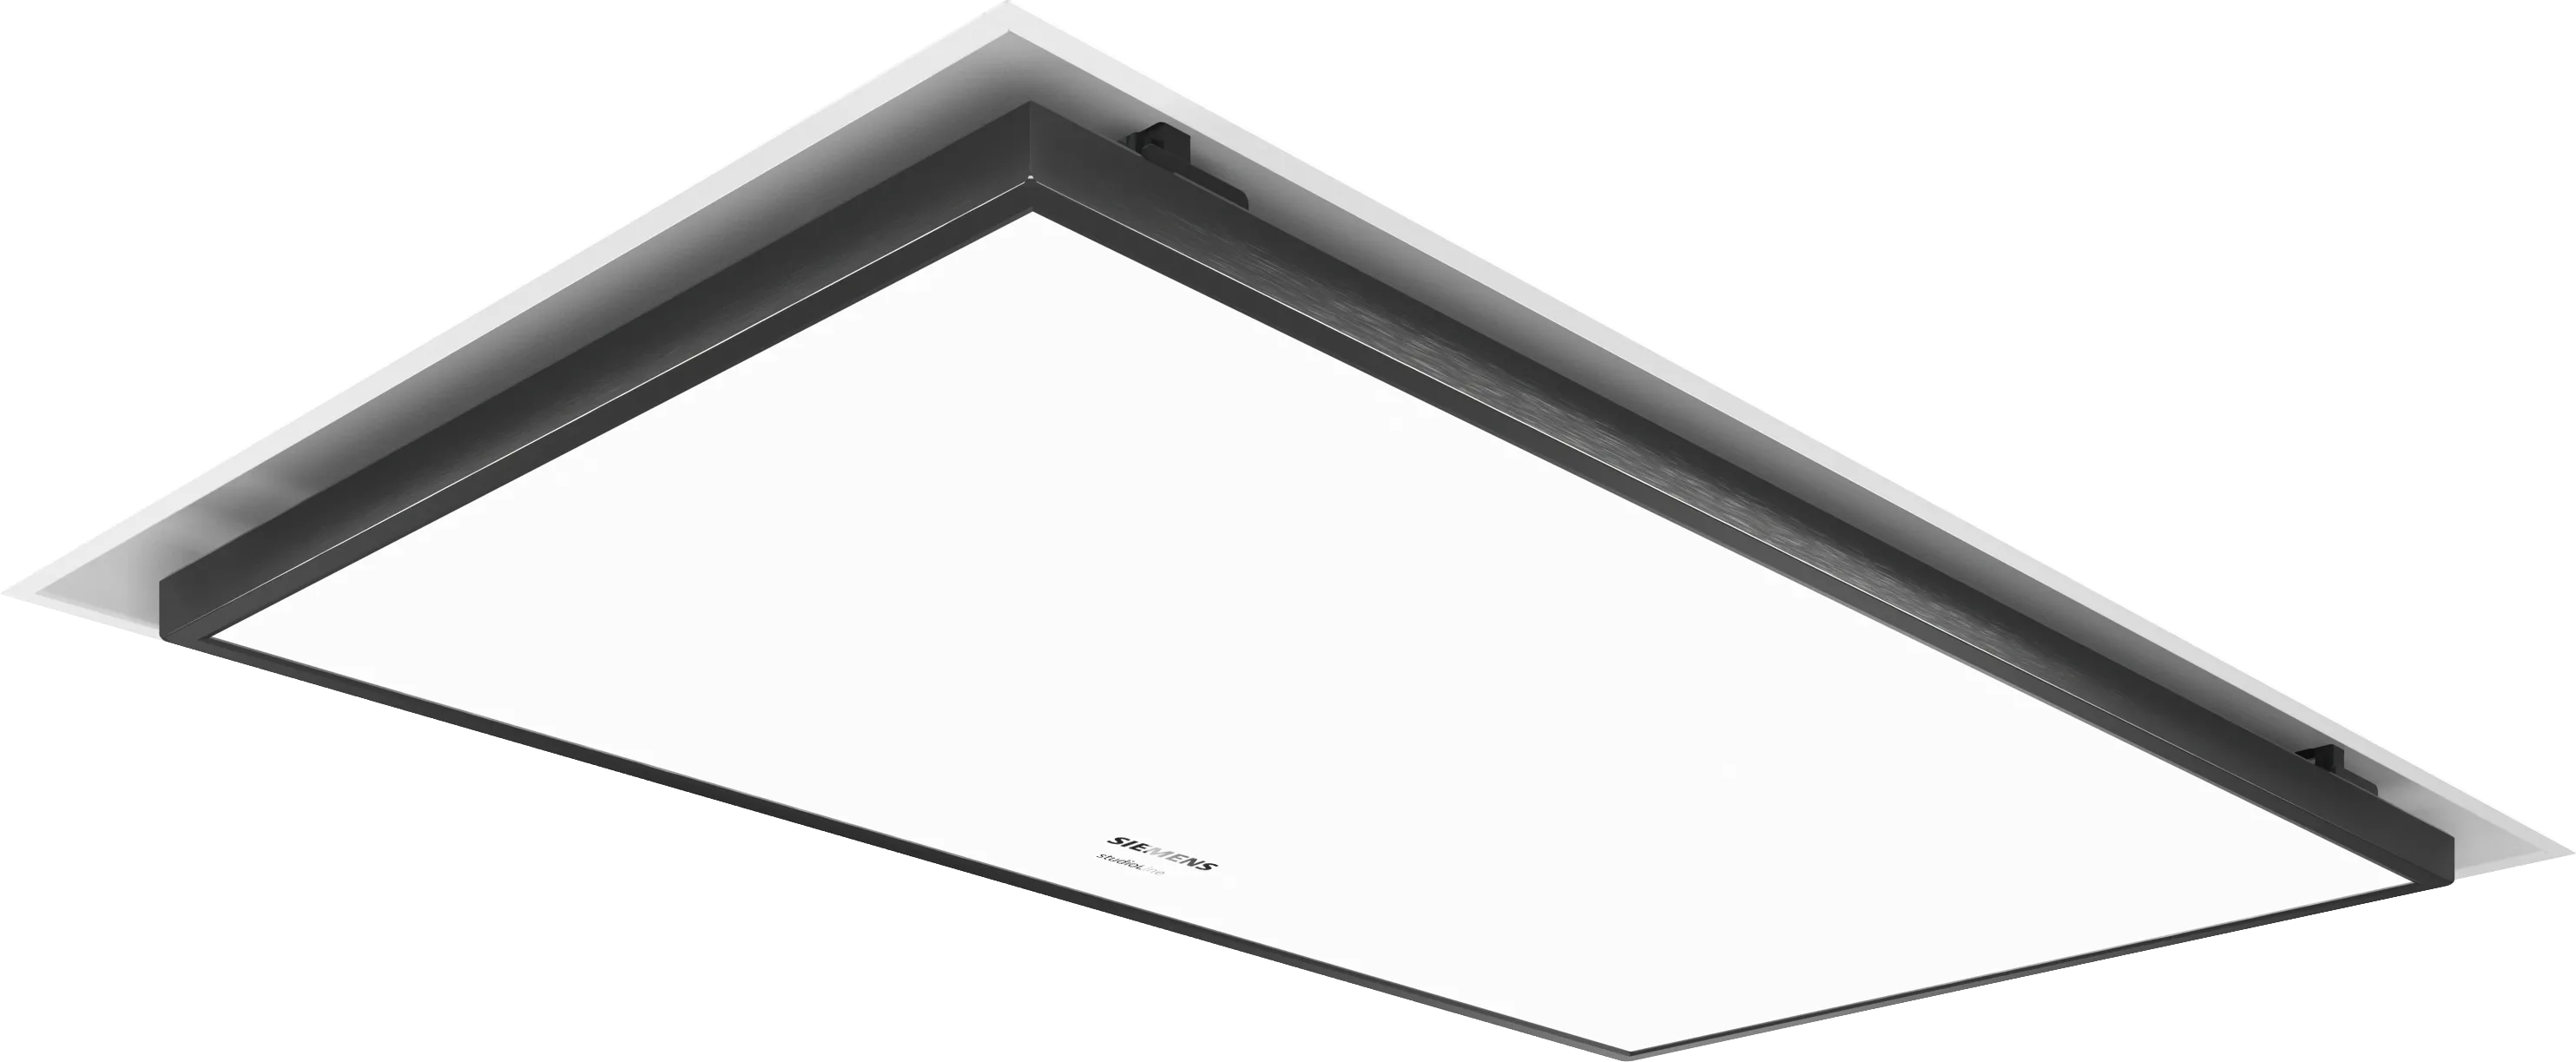 iQ700 Exaustor de teto 90 cm Branco 